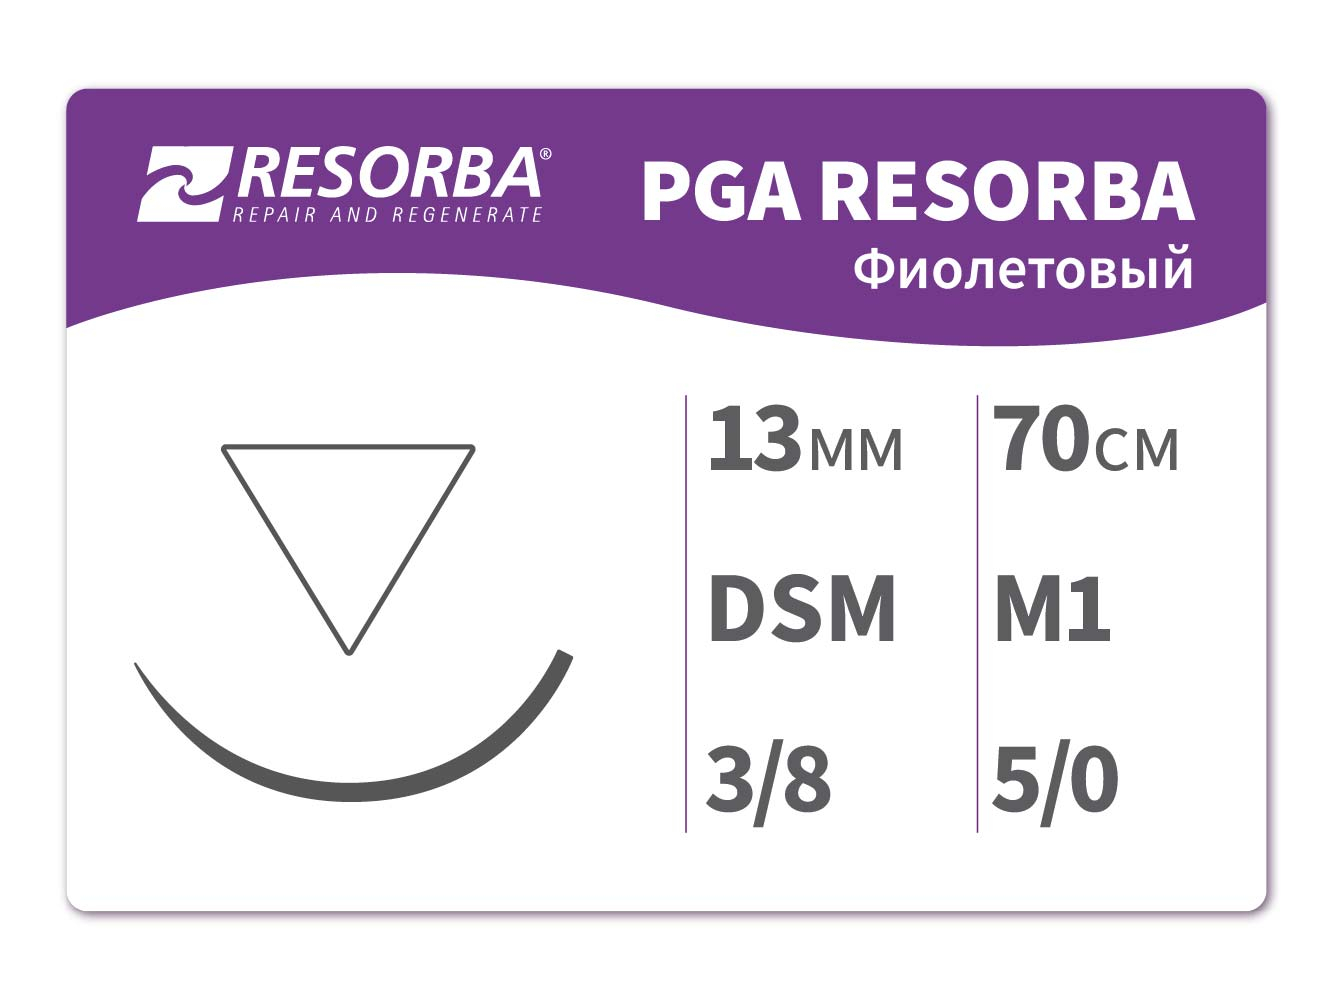 PA11511 ПГА-Ресорба фиолетовая М1 (5/0) 70см. DSM13, RESORBA (Германия)